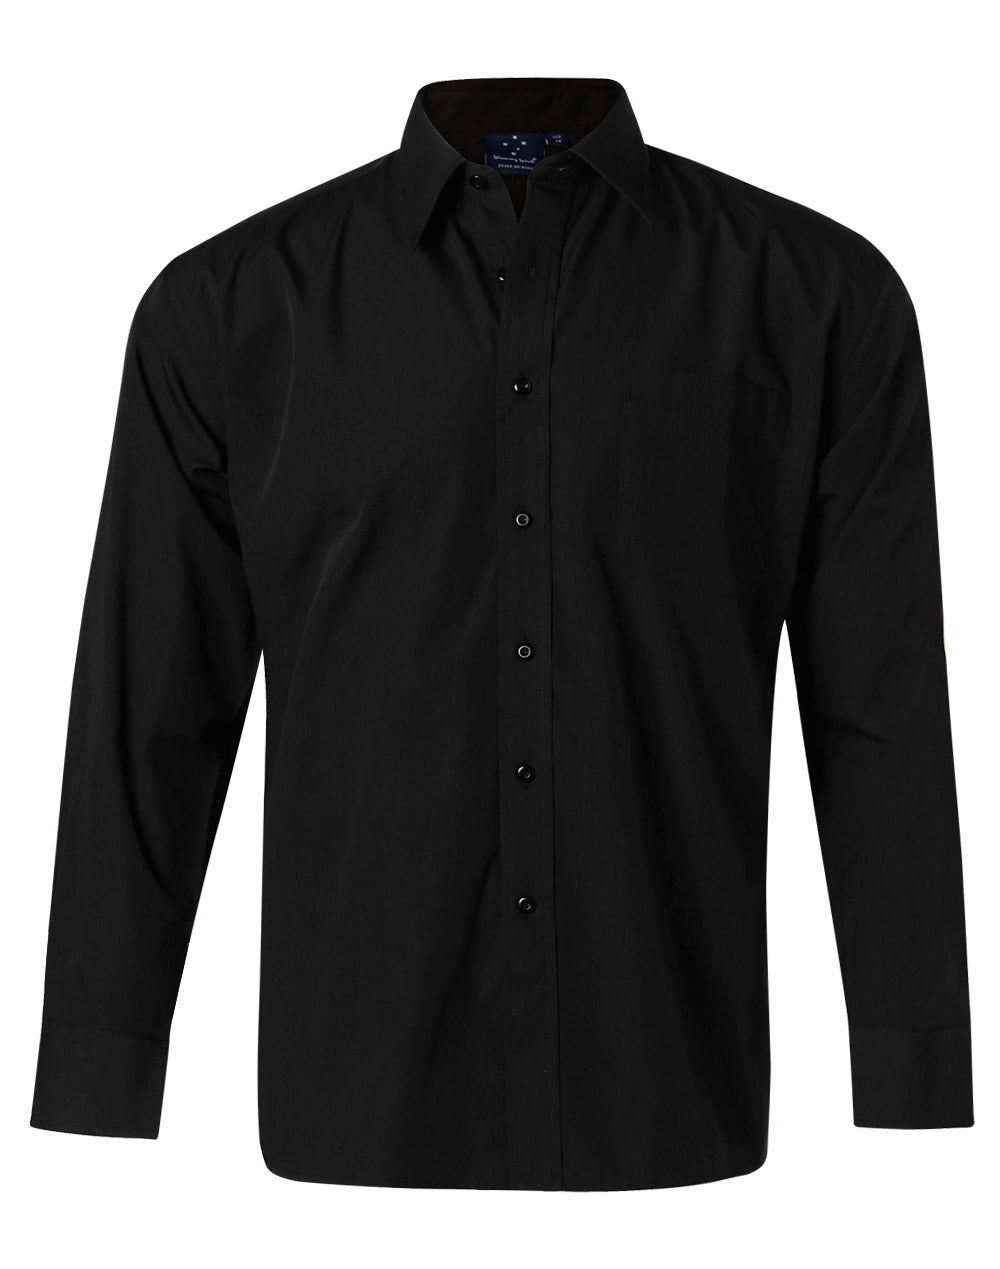 Winning Spirit-Men's Poplin Long Sleeve Business Shirt-BS01L